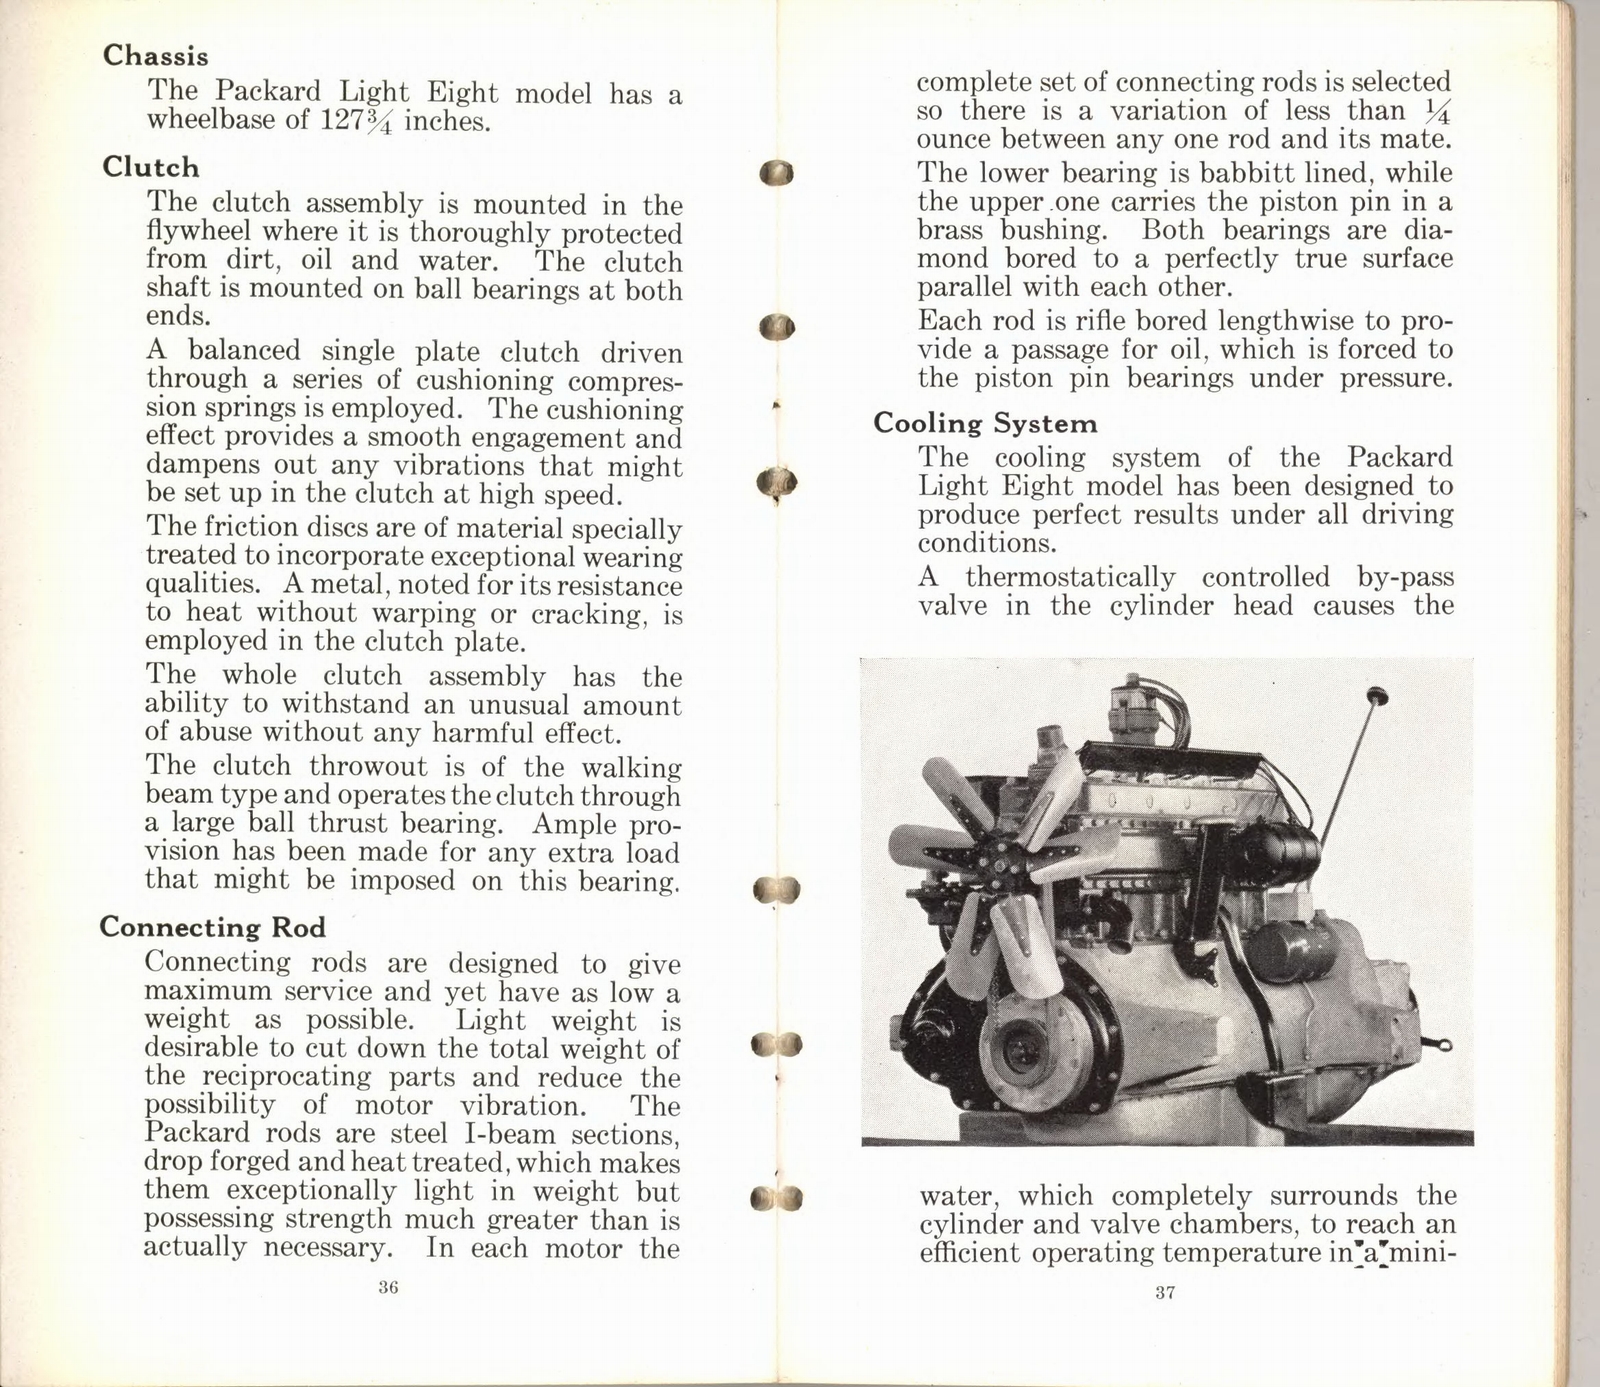 n_1932 Packard Light Eight Facts Book-36-37.jpg